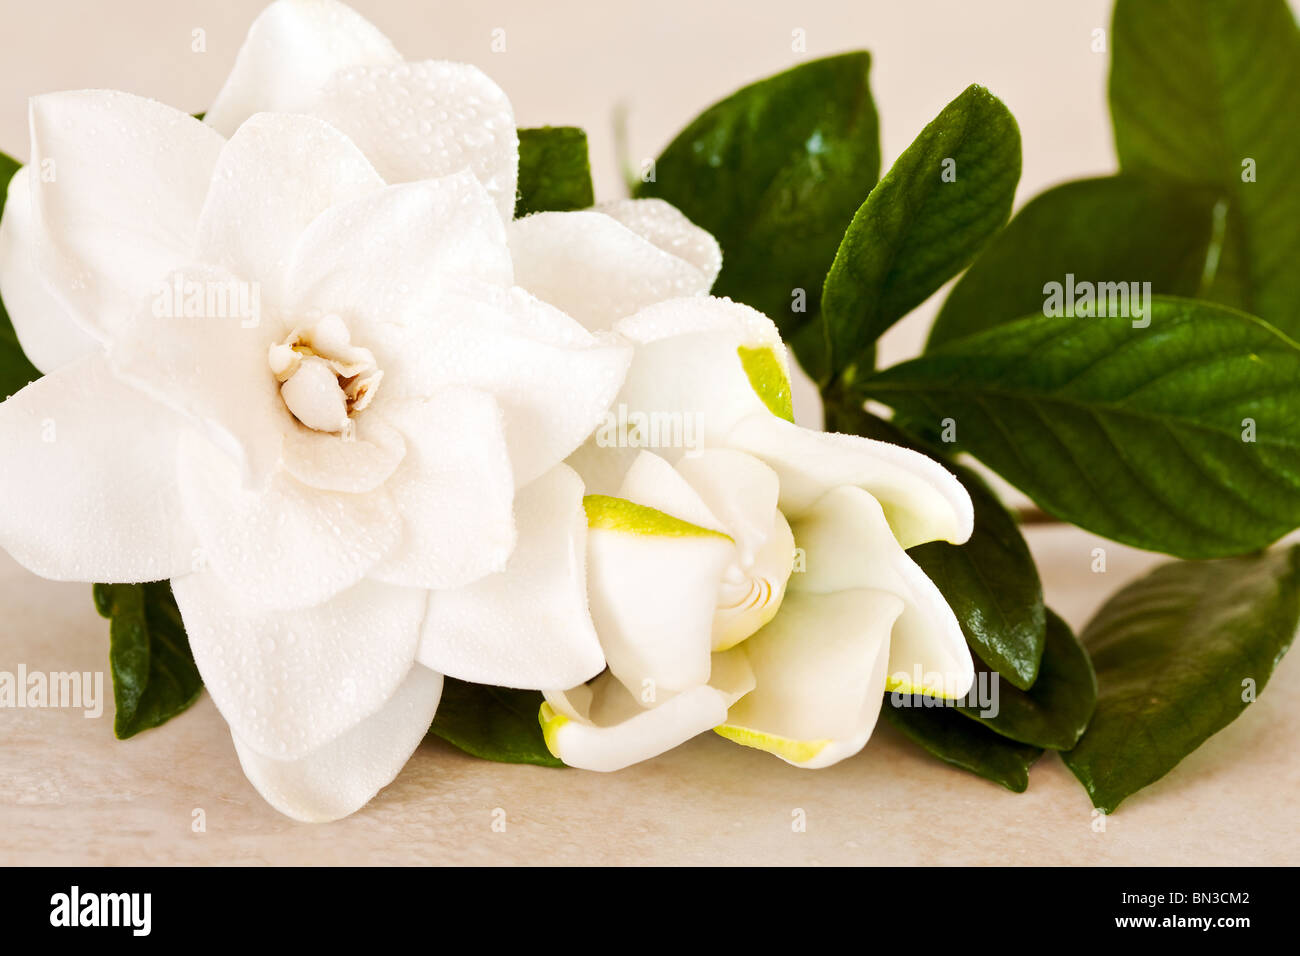 Le Gardenia blanc fleurs sur fond de marbre Banque D'Images